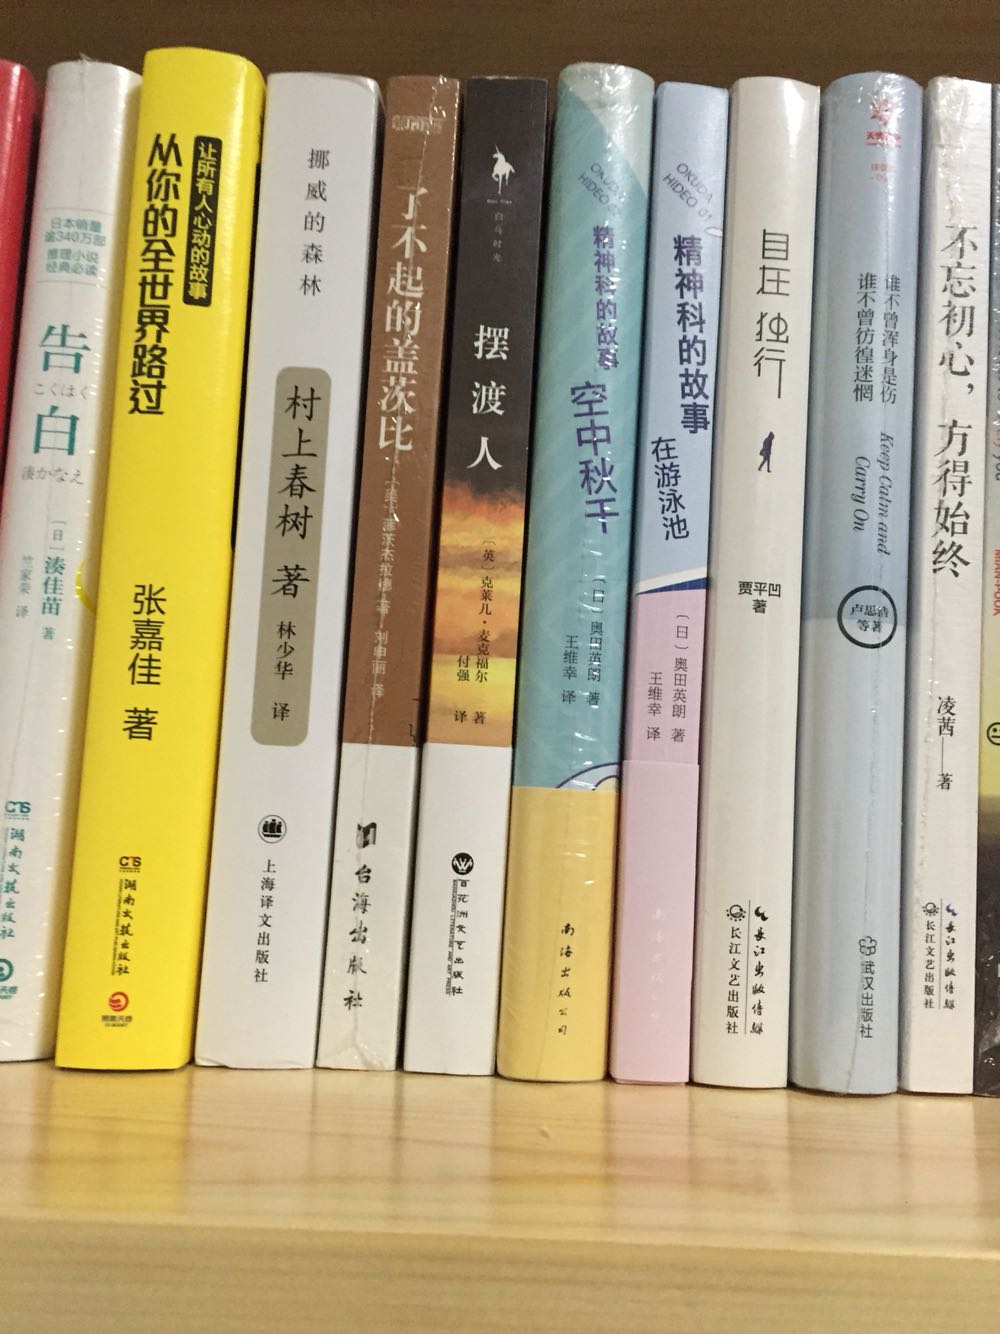 买来就放在这里，一直没看，日本作家写的书，还是觉得没有中国的通俗小说好看。